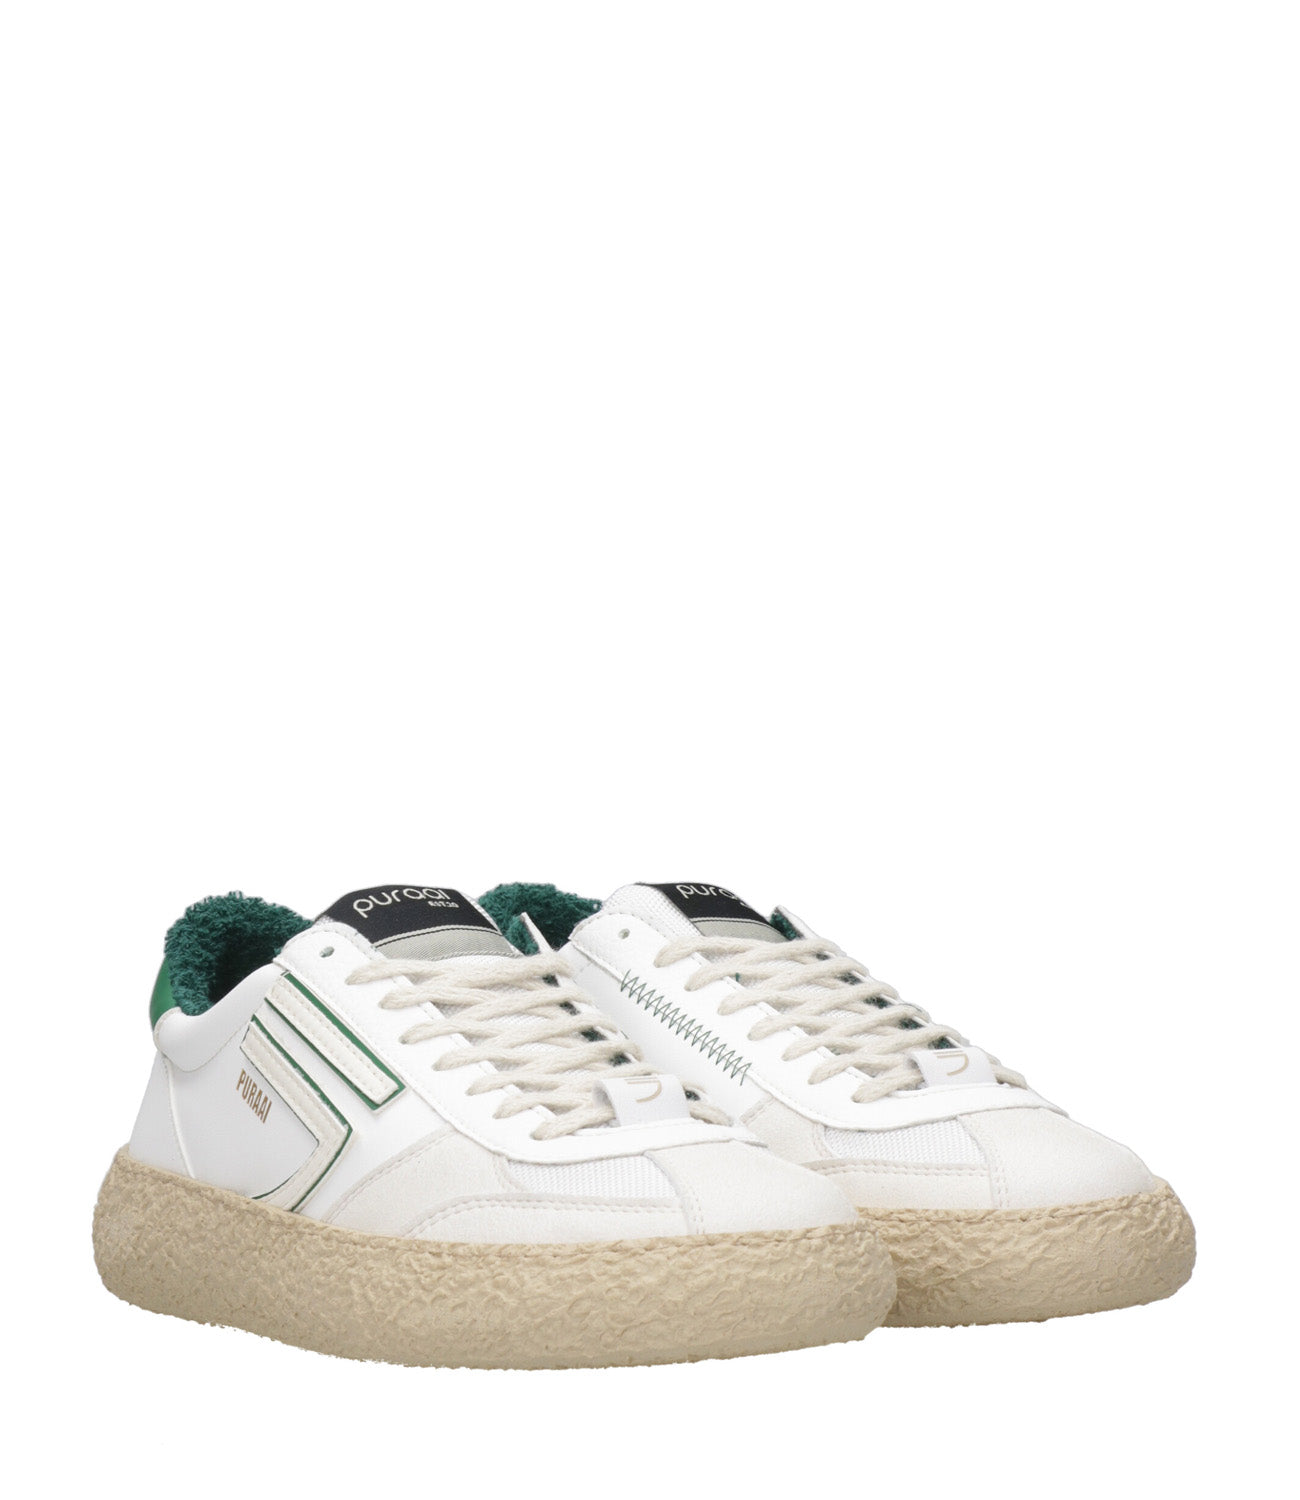 Puraai | Sneakers 1.01 Classic Bianco e Verde